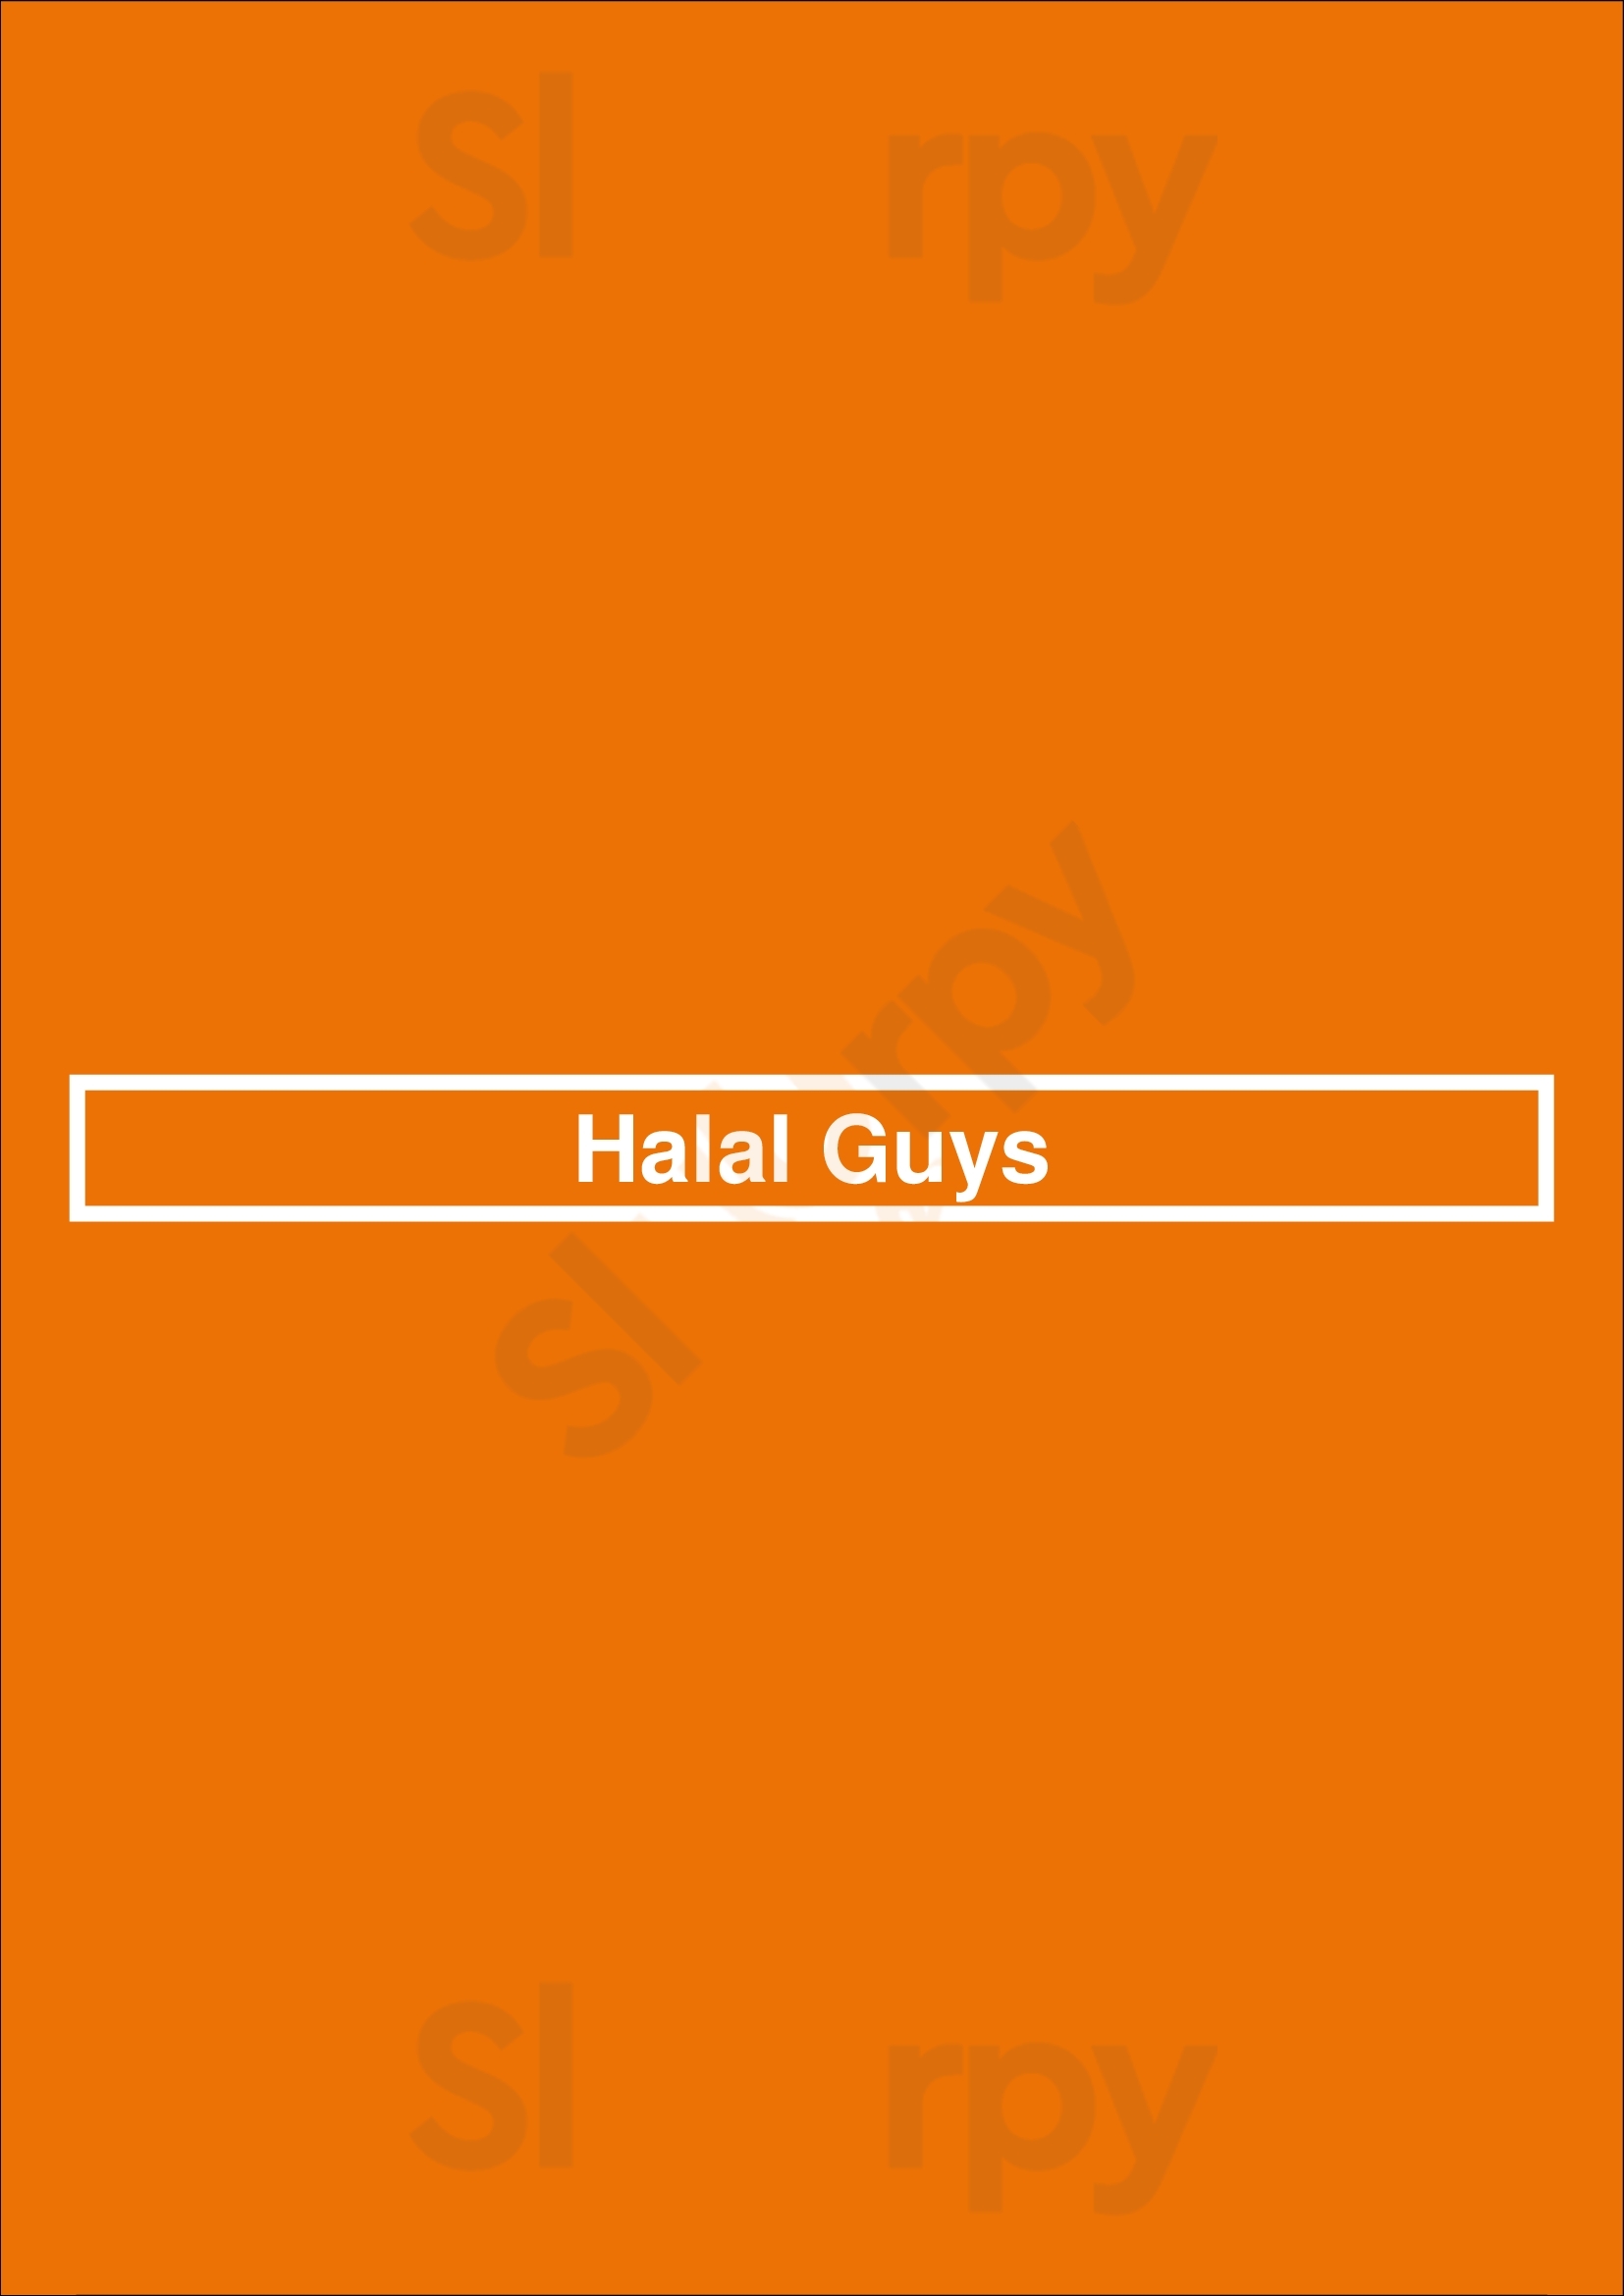 The Halal Guys Columbia Menu - 1